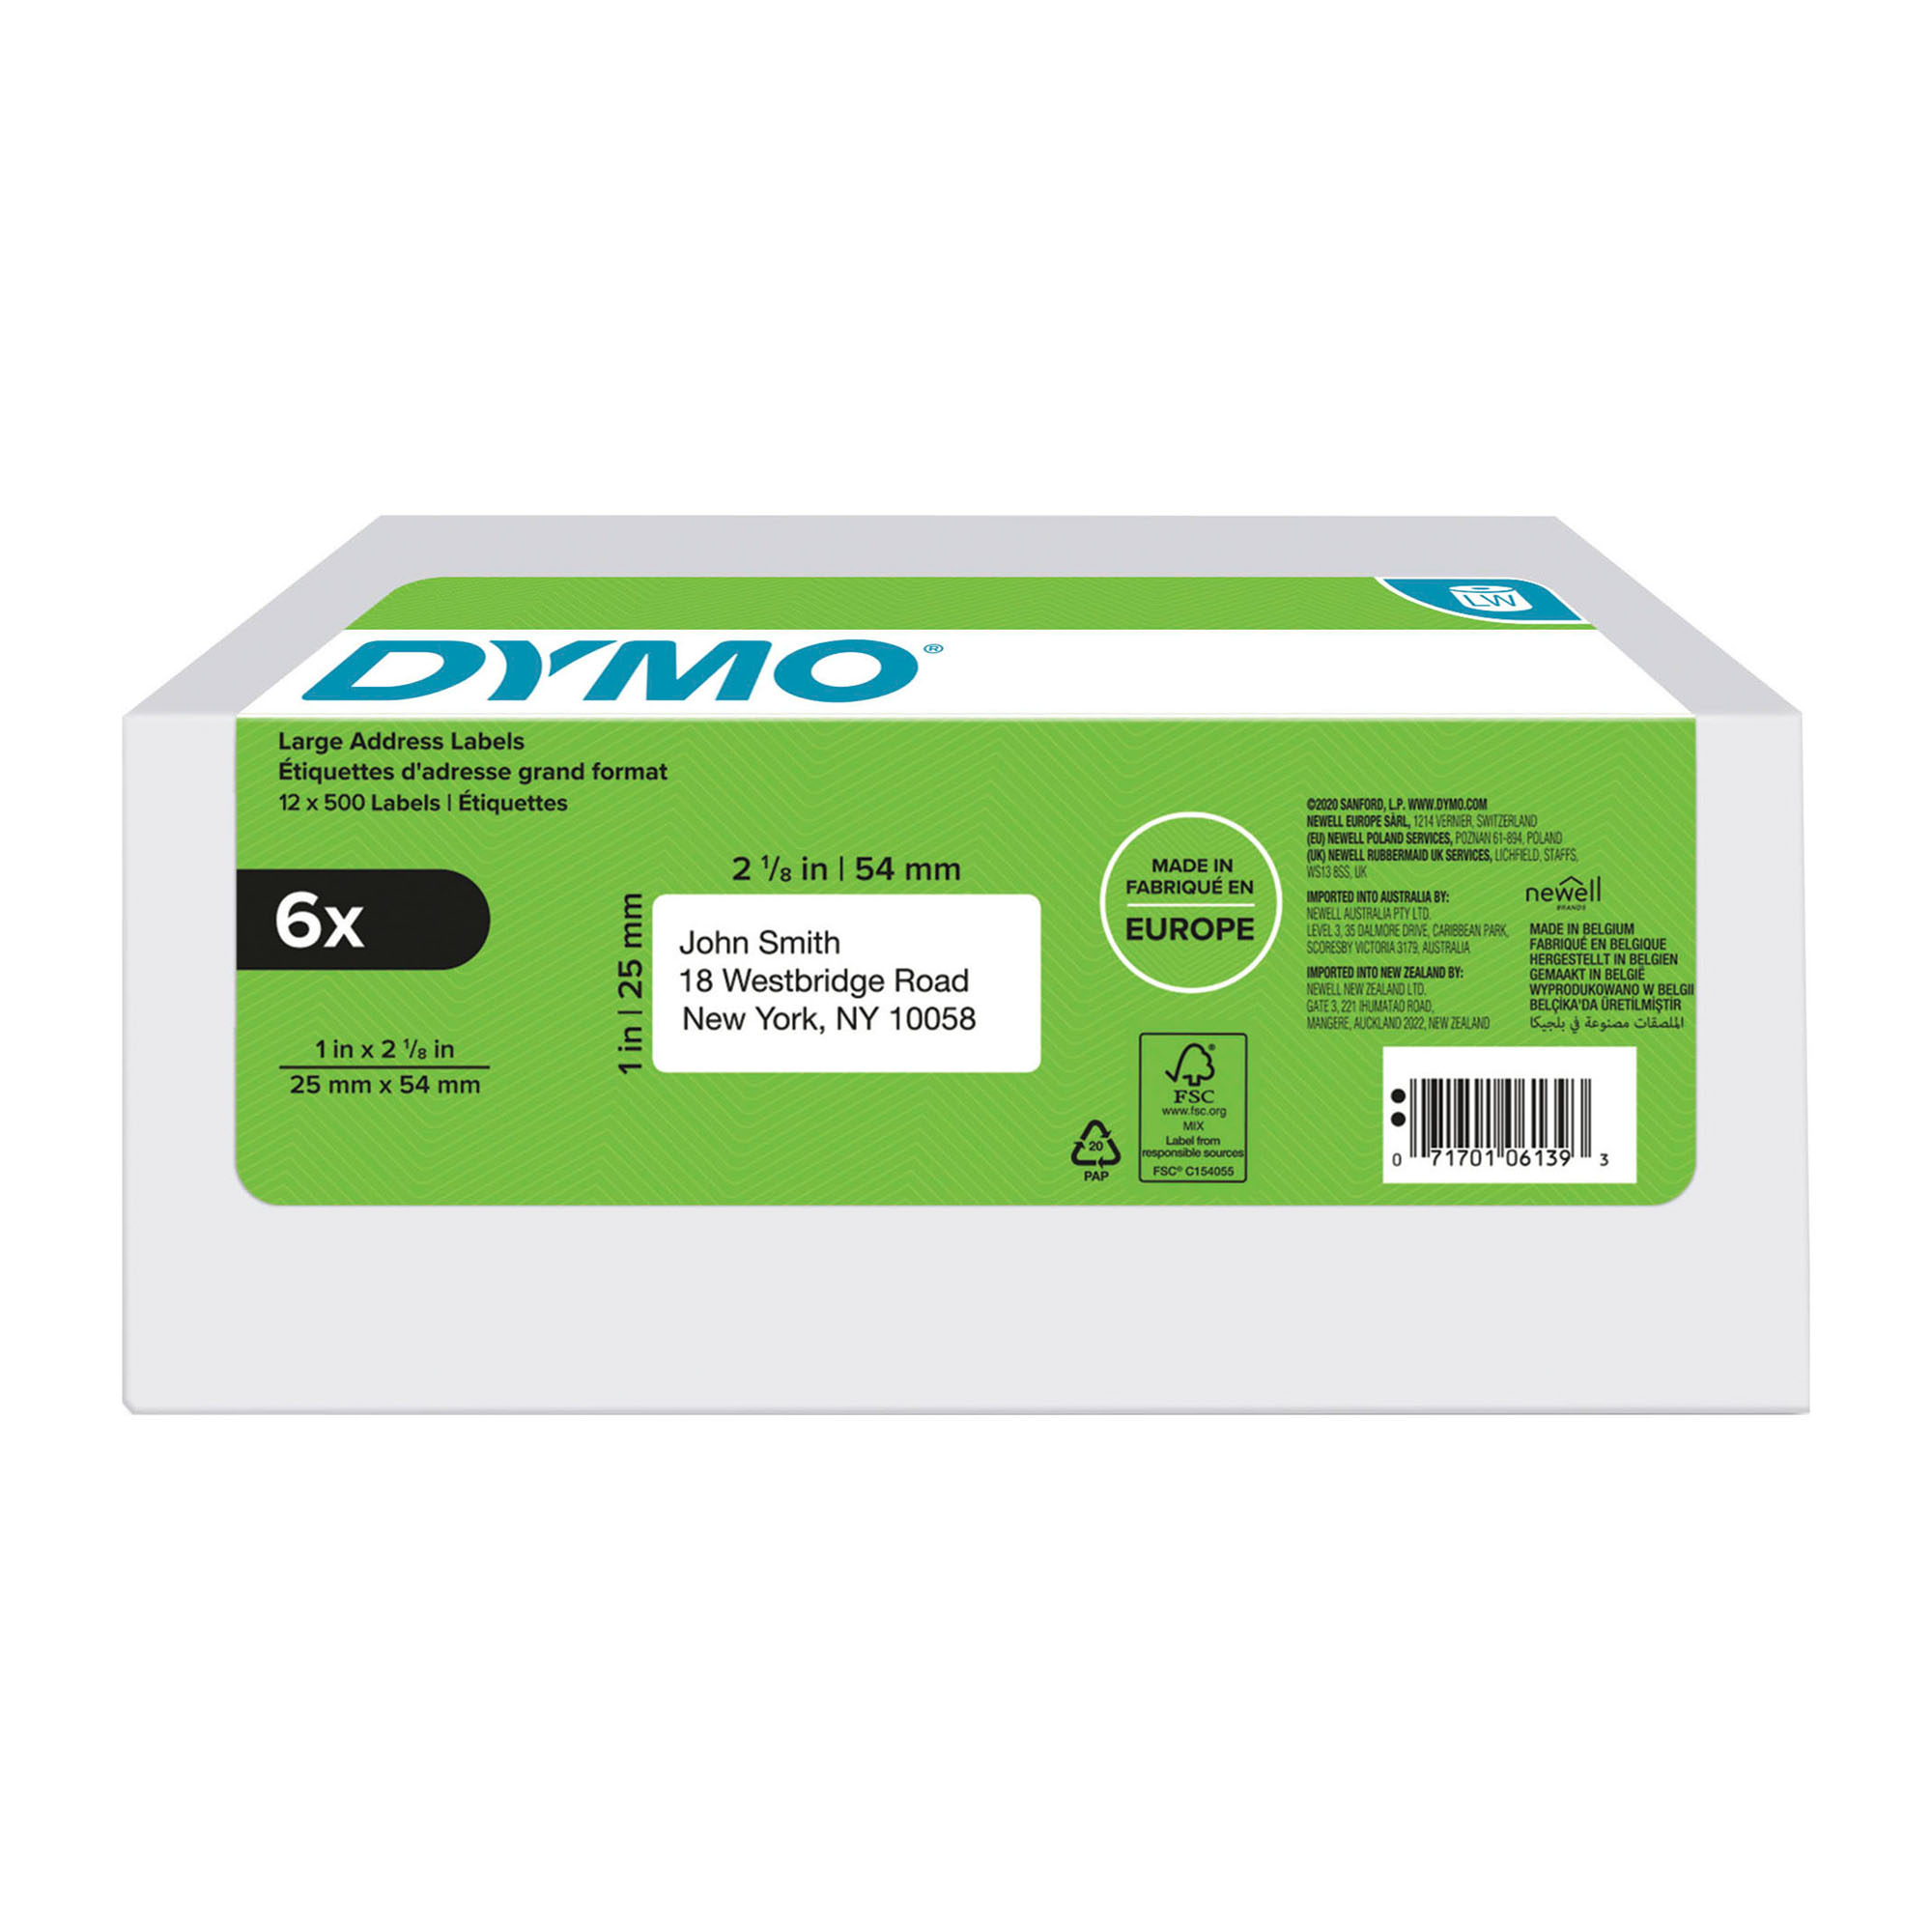 Confezione convenienza 6 rotoli di 500 etichette LabelWriter Dymo per  indirizzi di reso grandi 25 x 54 mm - Adesivo permanente su